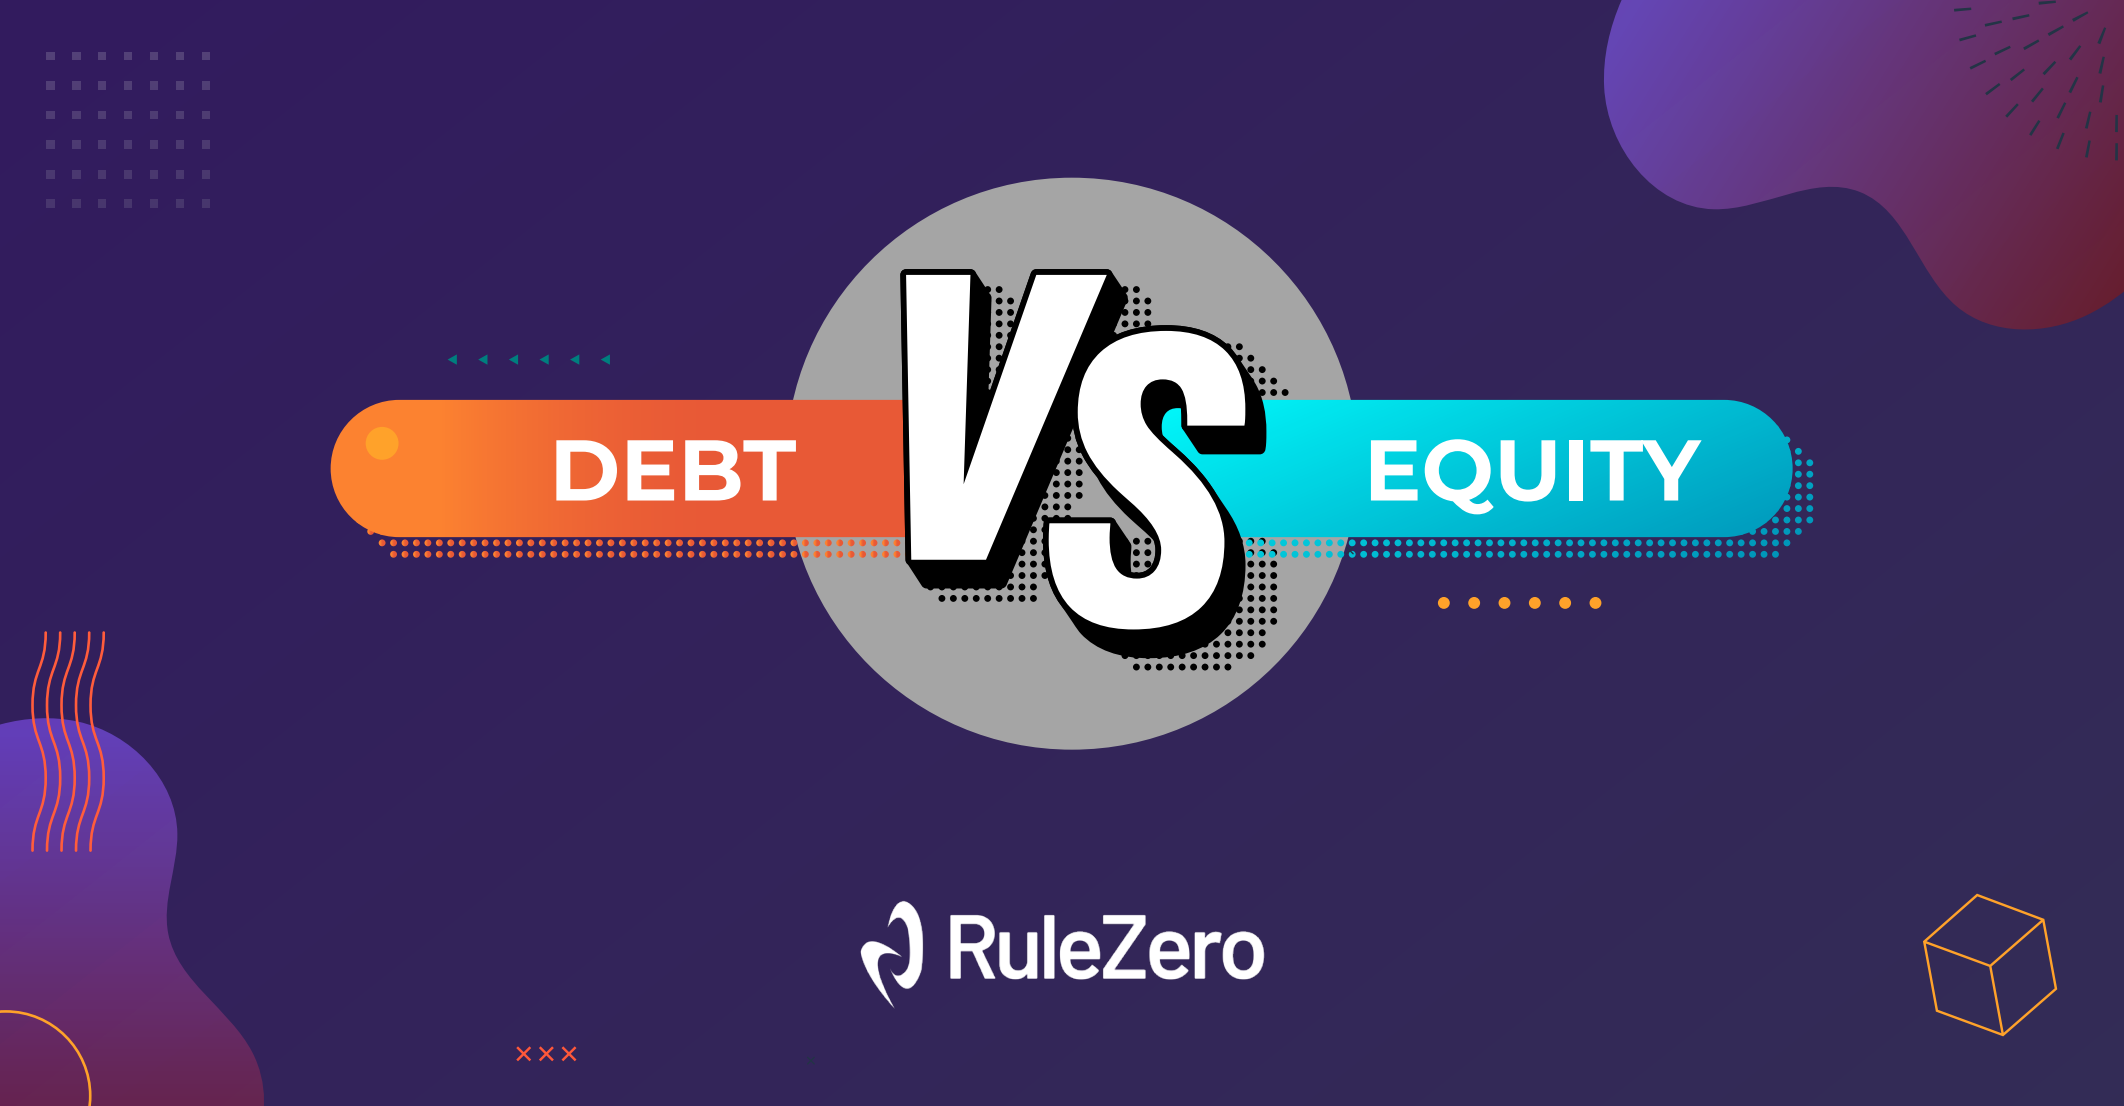 Debt vs Equity